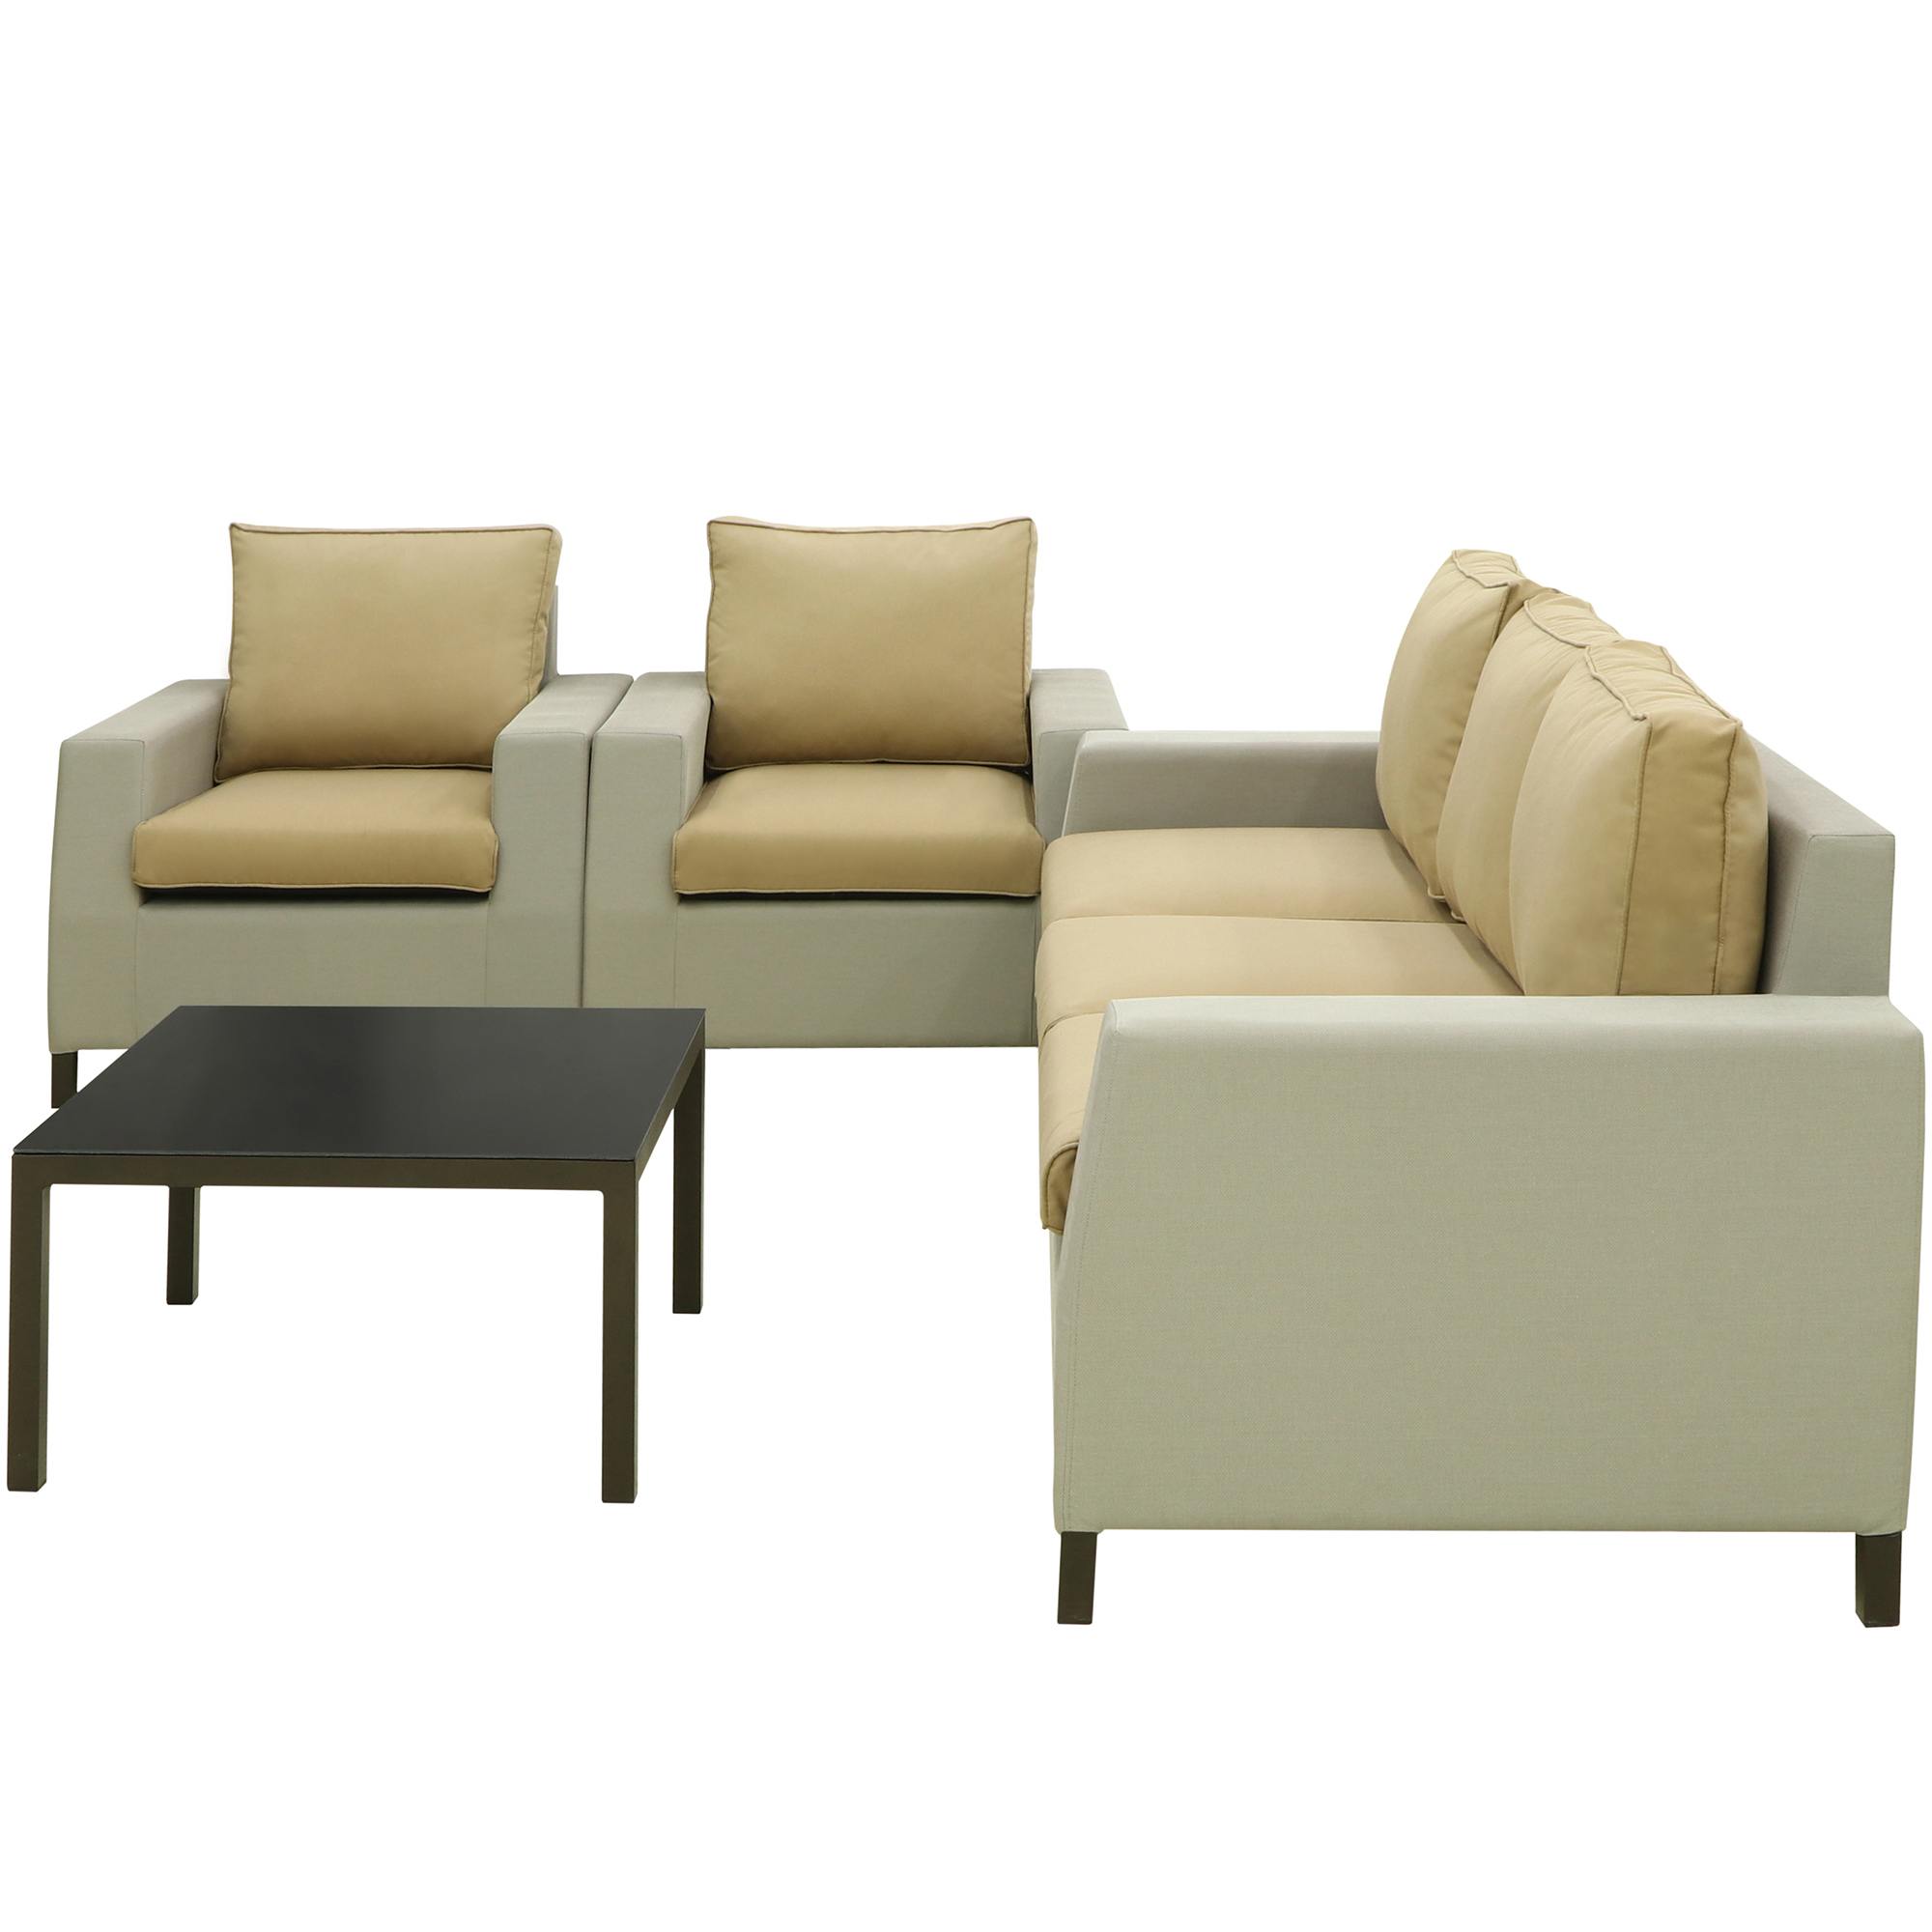 Комплект мебели Yunqi jin 4 предмета комплект tetchair pelangi 02 15 стол со стеклом 4 кресла без подушек ротанг walnut грецкий орех